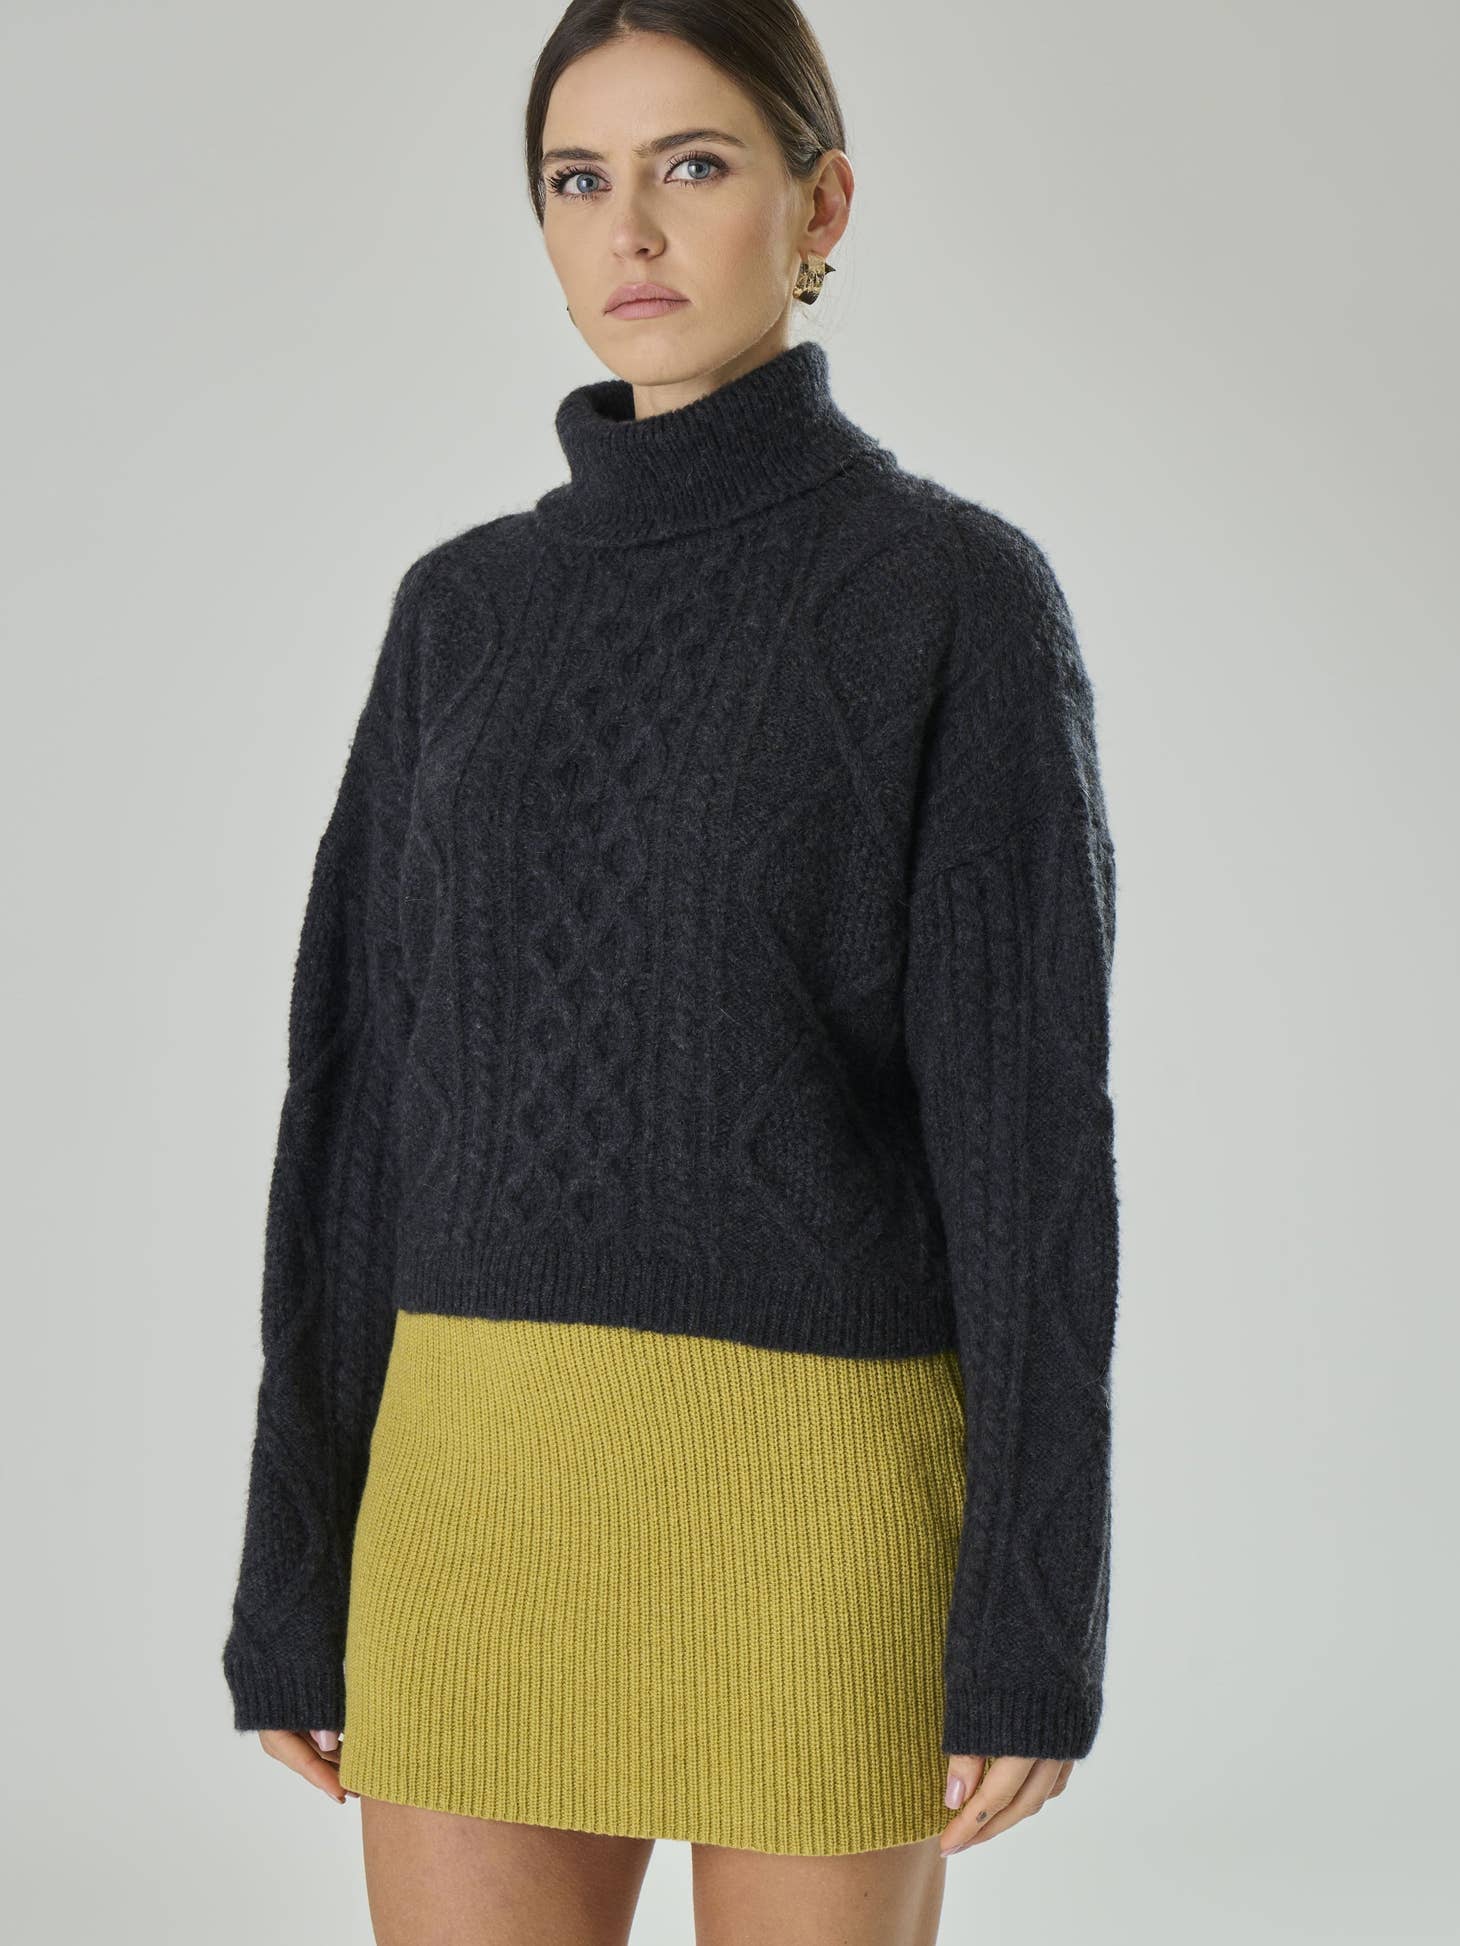 
  
  Cecilia Merino Wool Sweater
  
